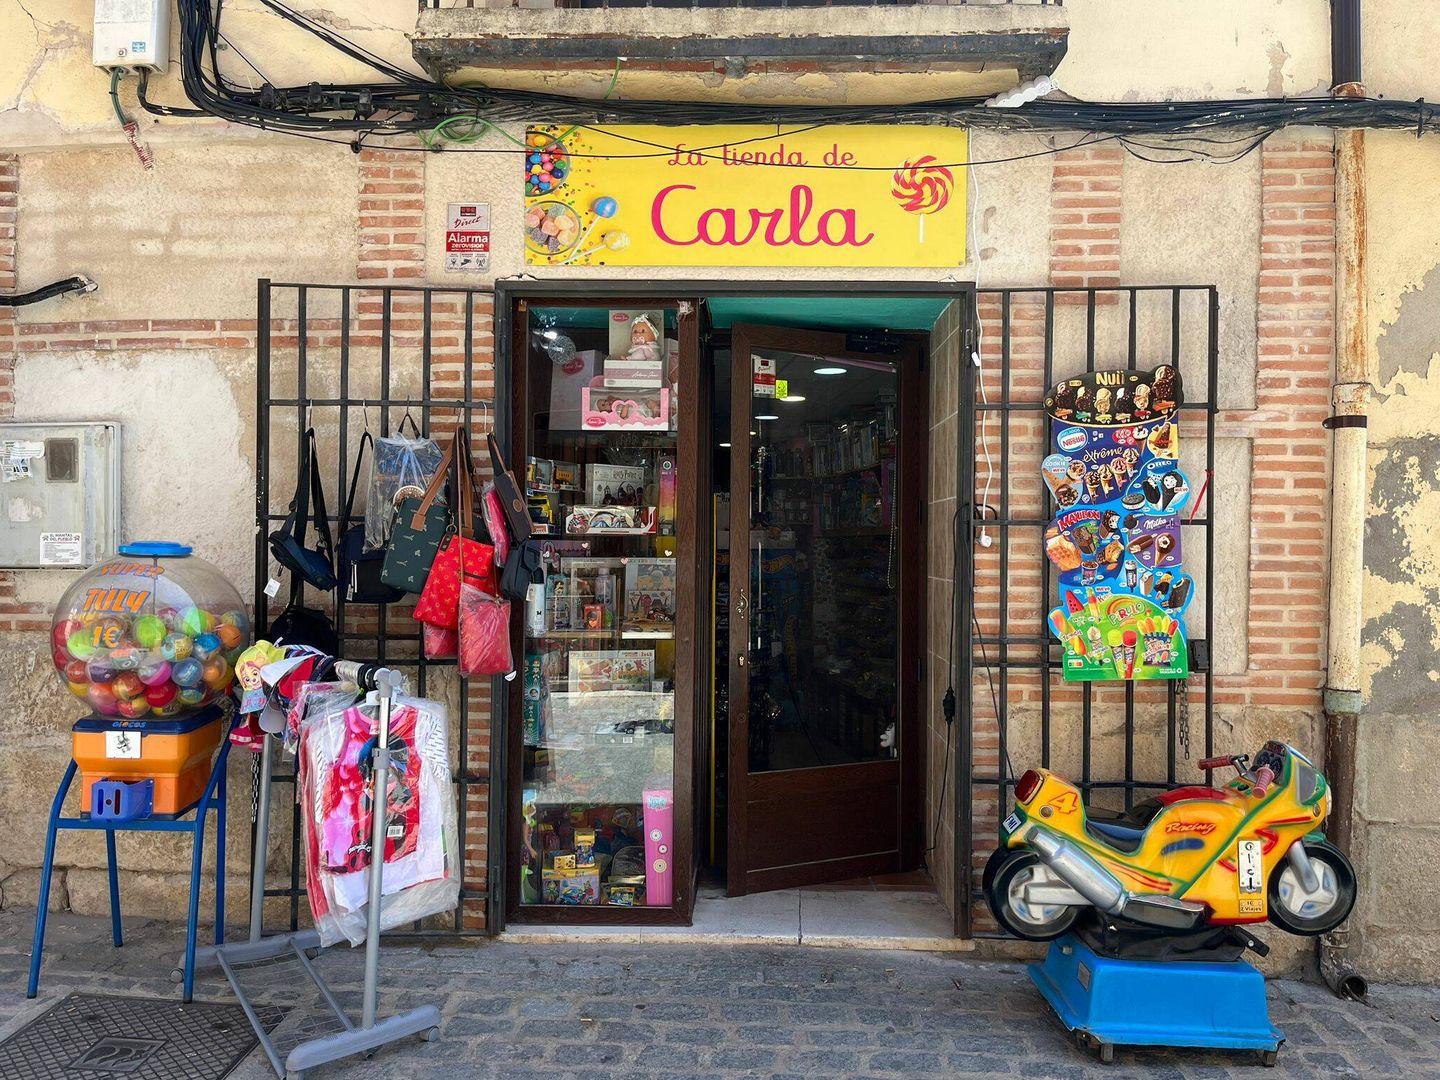 La tienda de Carla, que pierde ingresos cada vez que se cae internet. (A.F.)